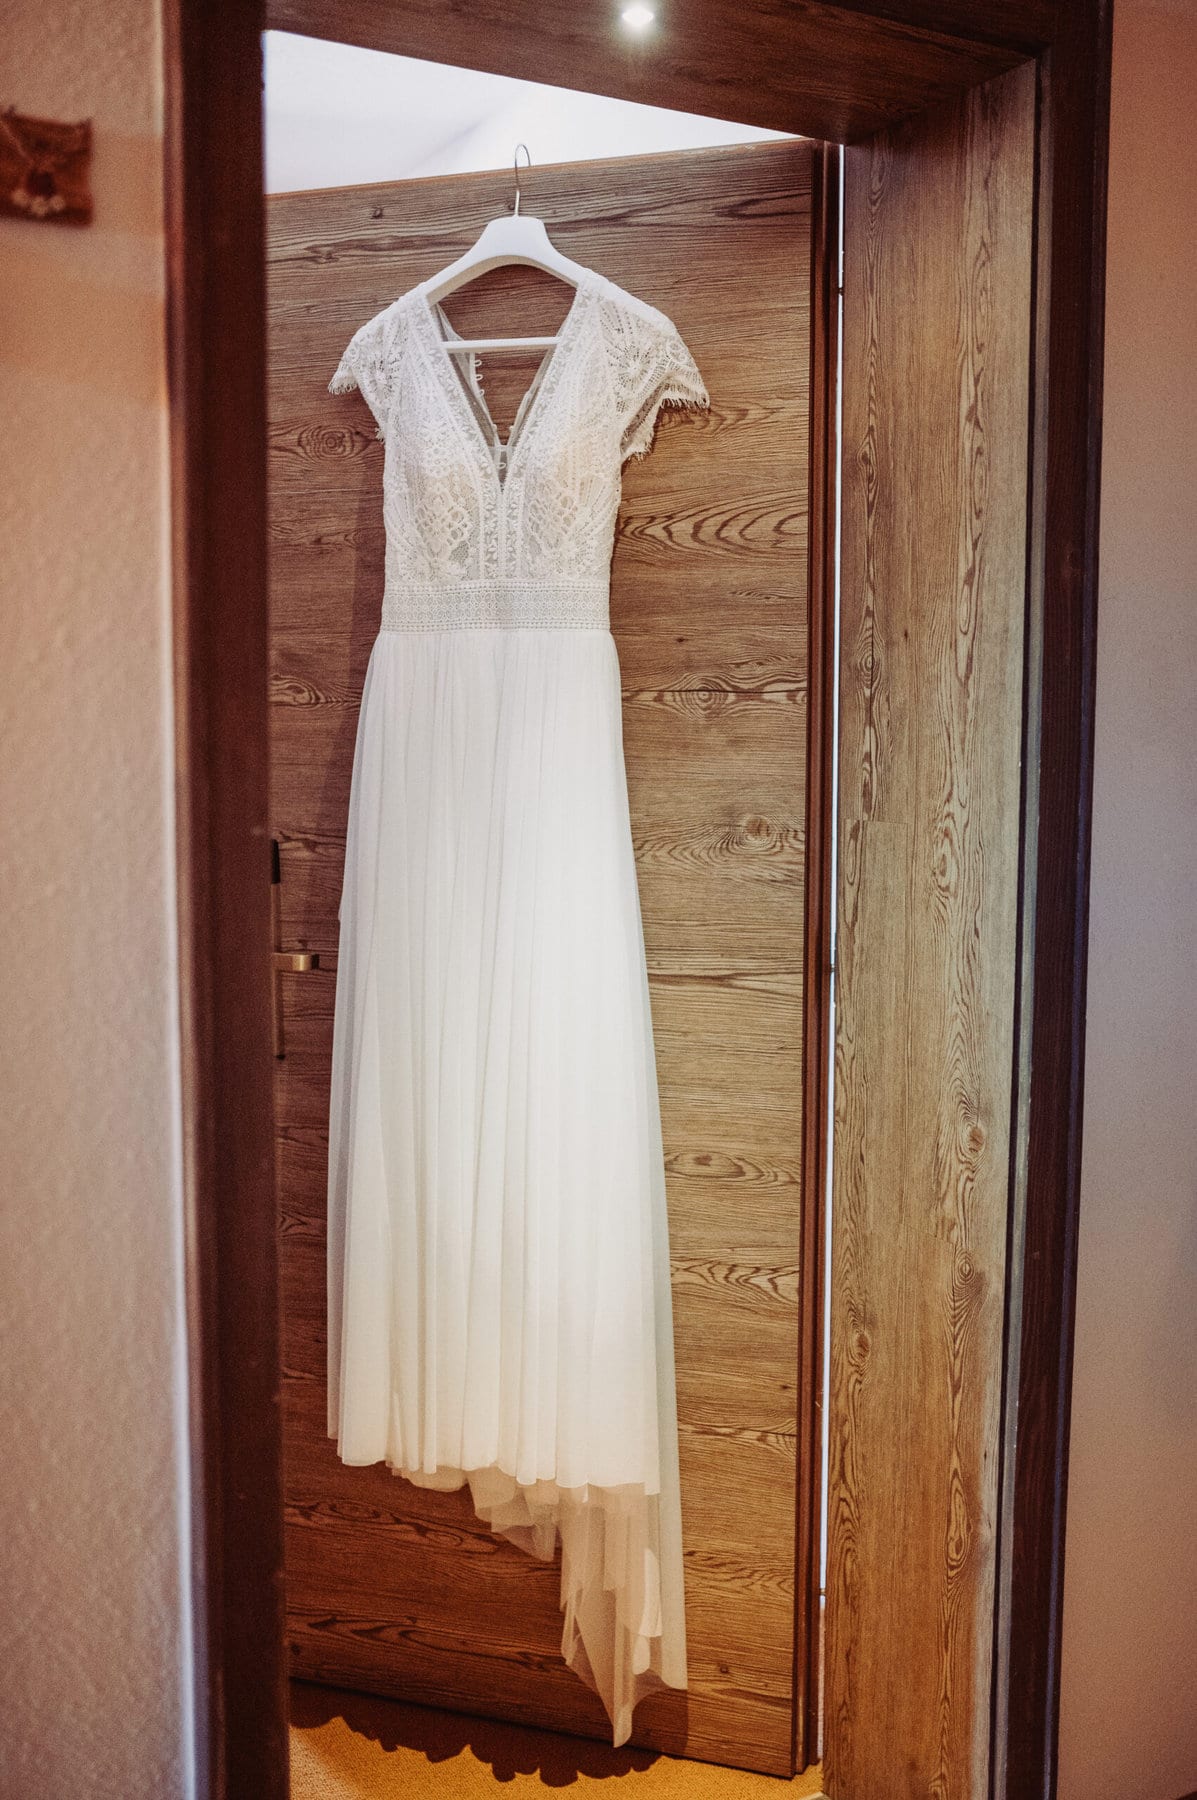 Das Getting Ready der Braut in Oberbayern am Schliersee. Das Hochzeitskleid hängt an einer offenen Tür.